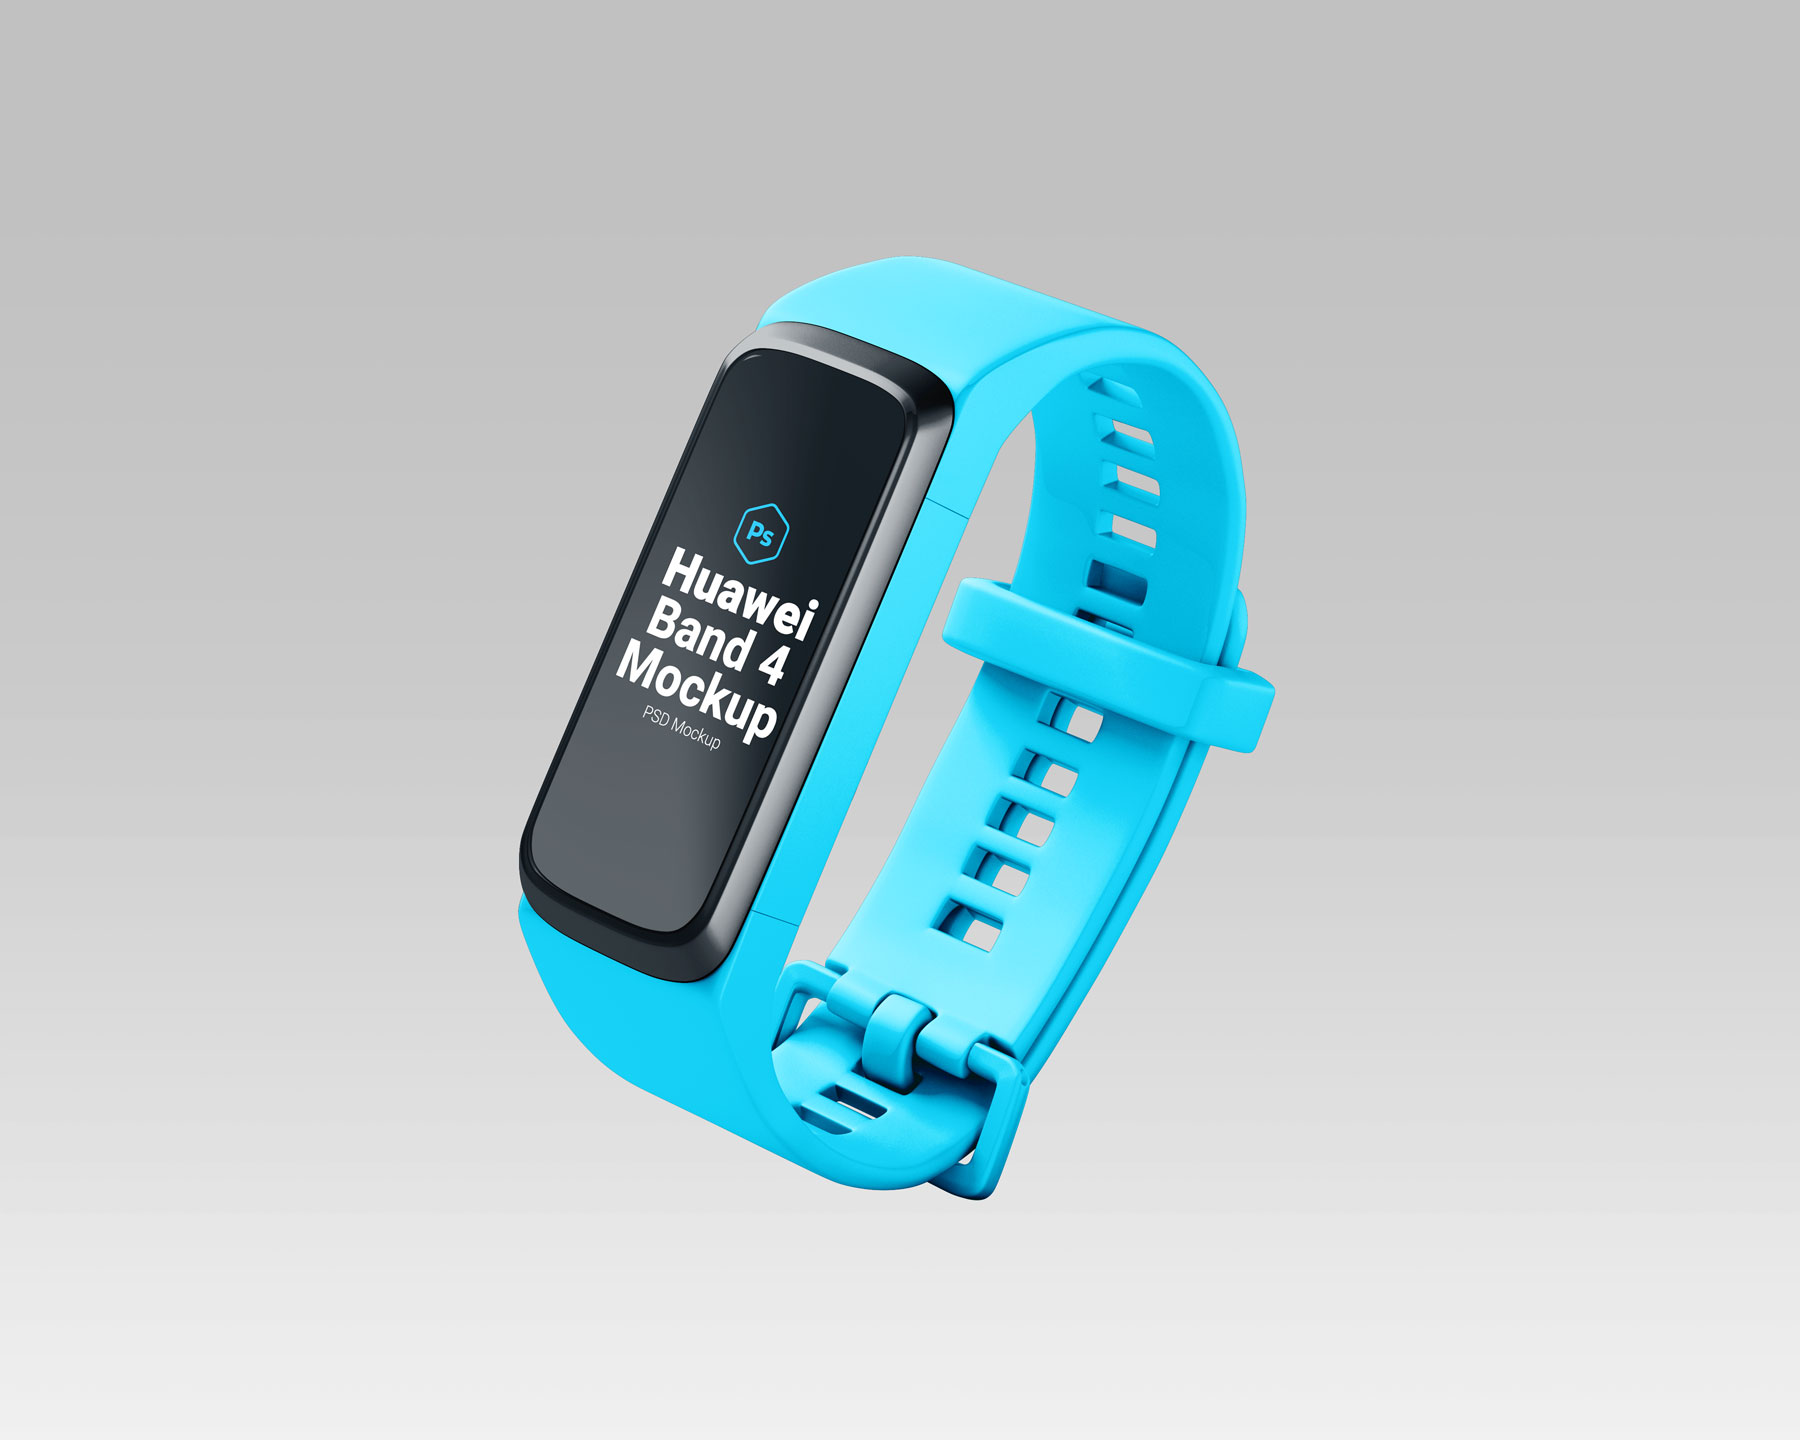 Free Huawei Band 4 Smartwatch Mockup PSD Set